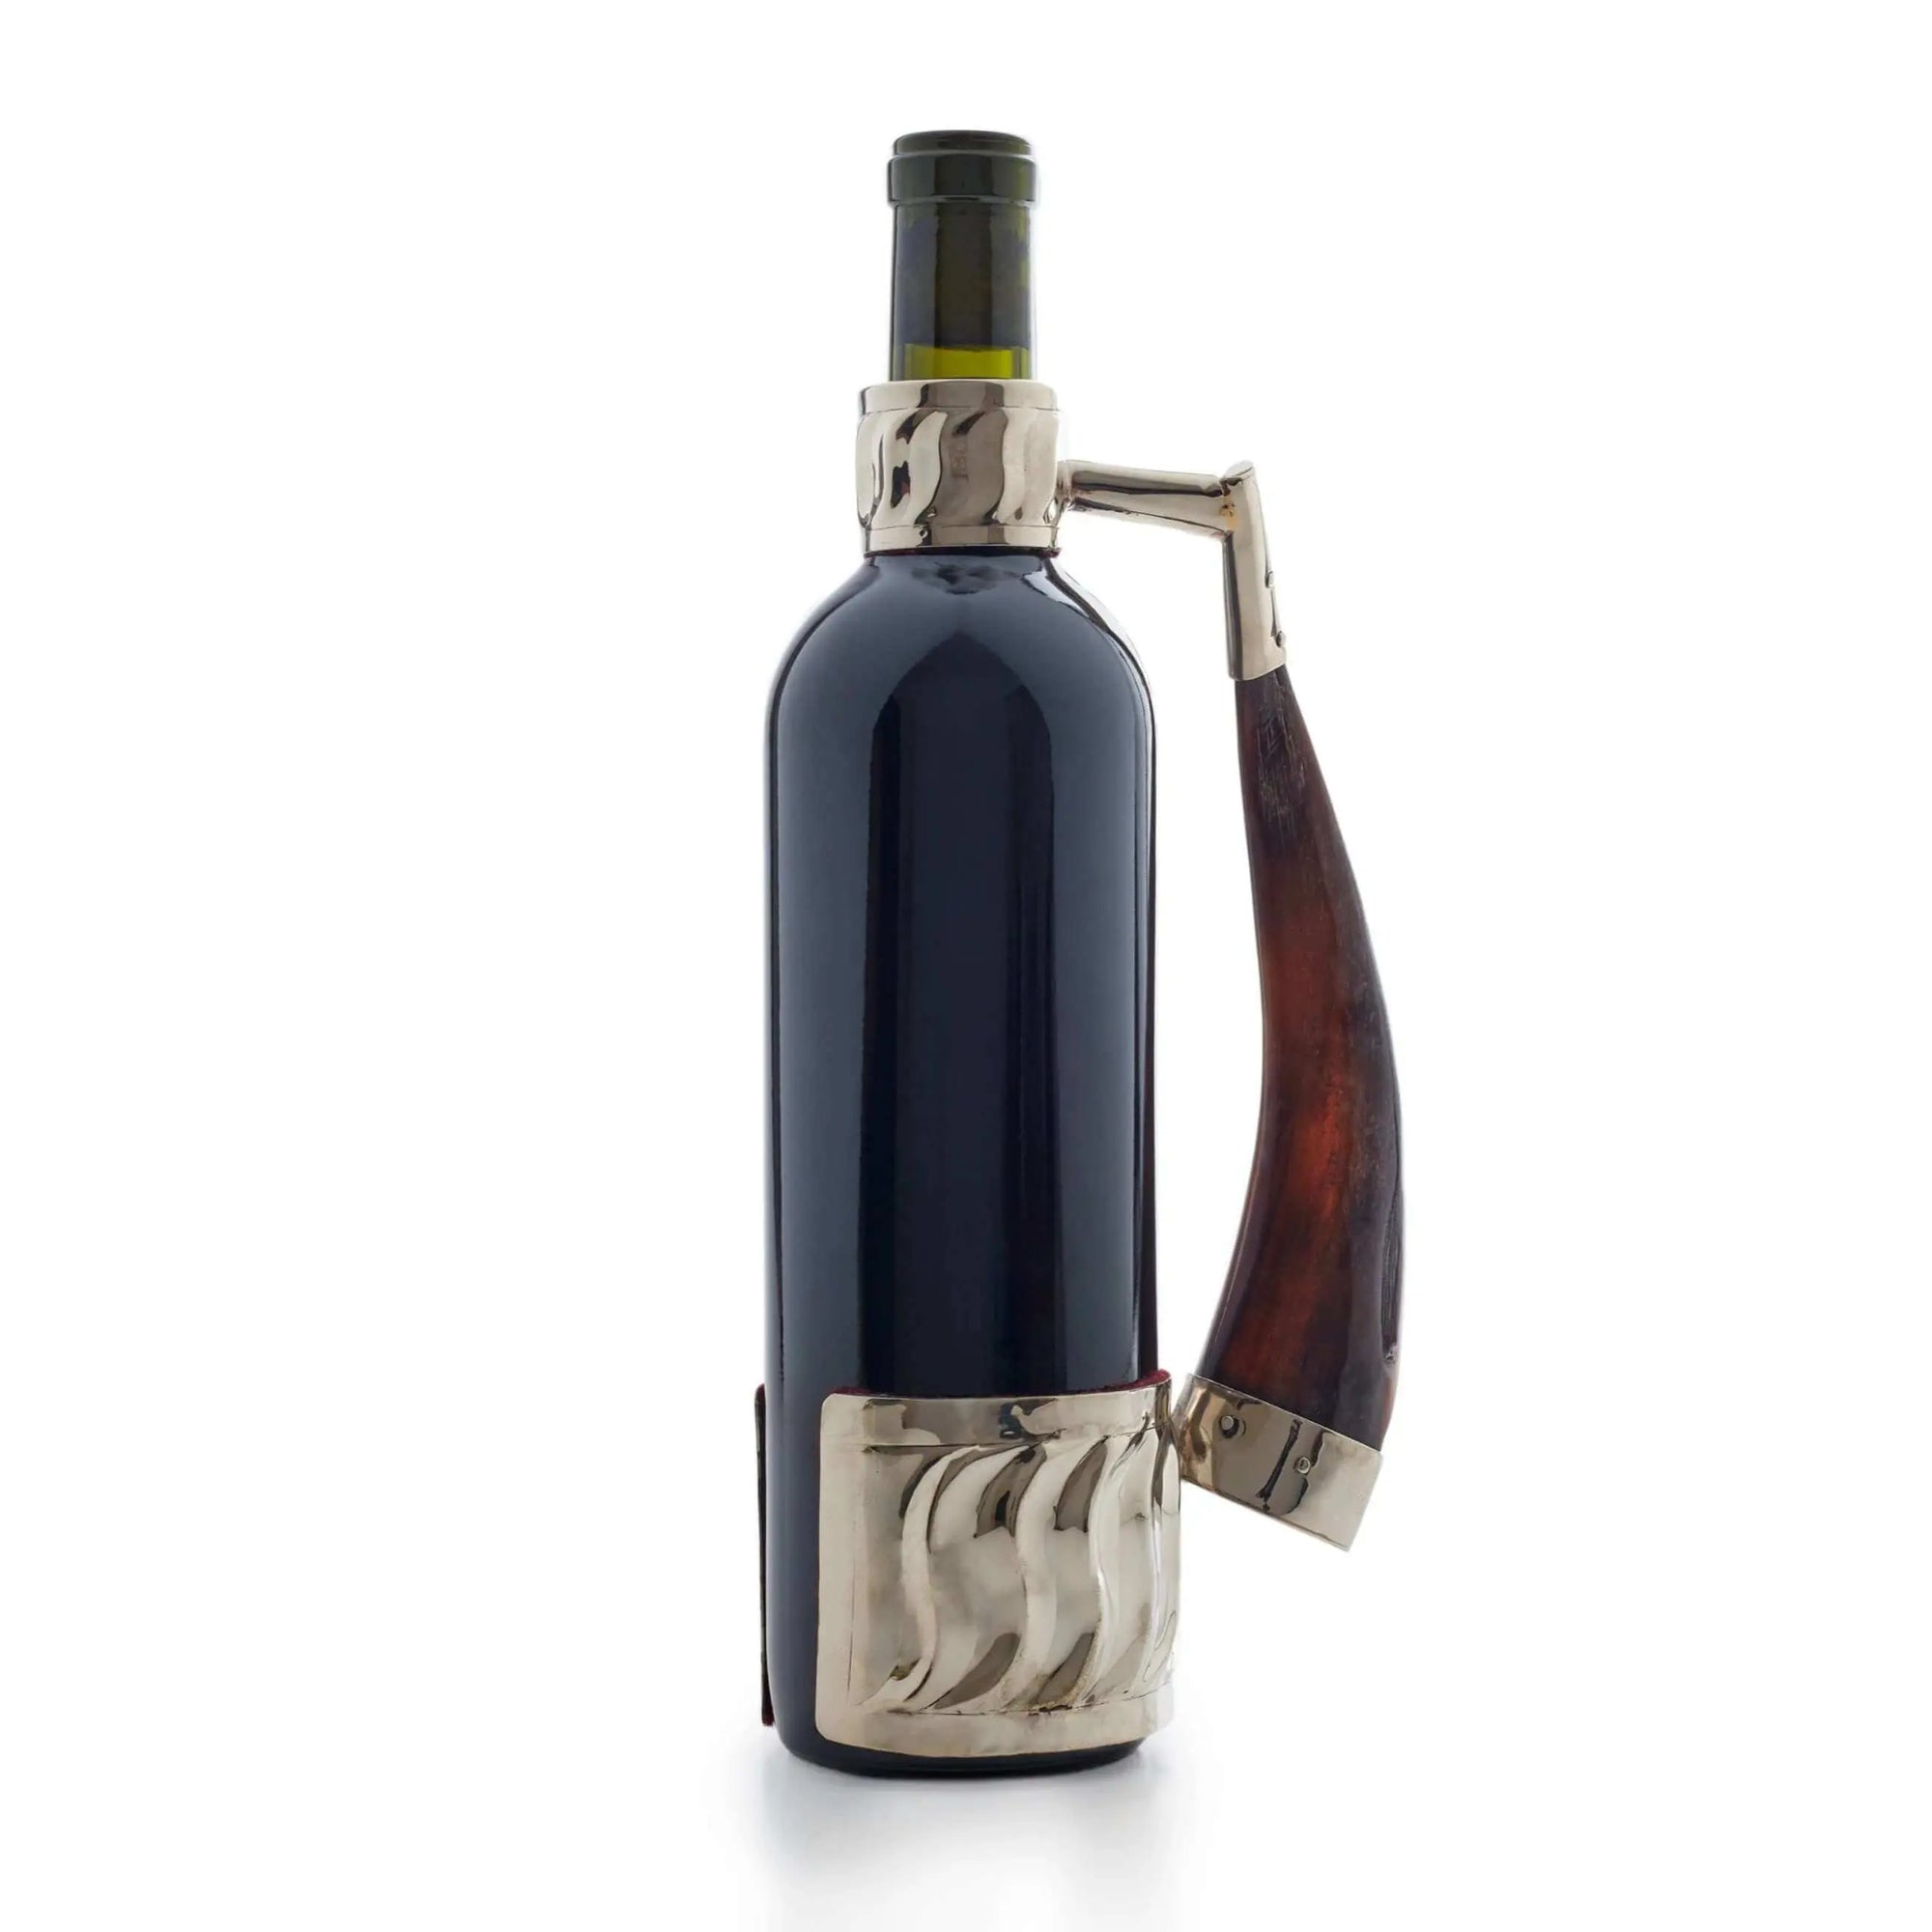 Plain finish wine bottle holder